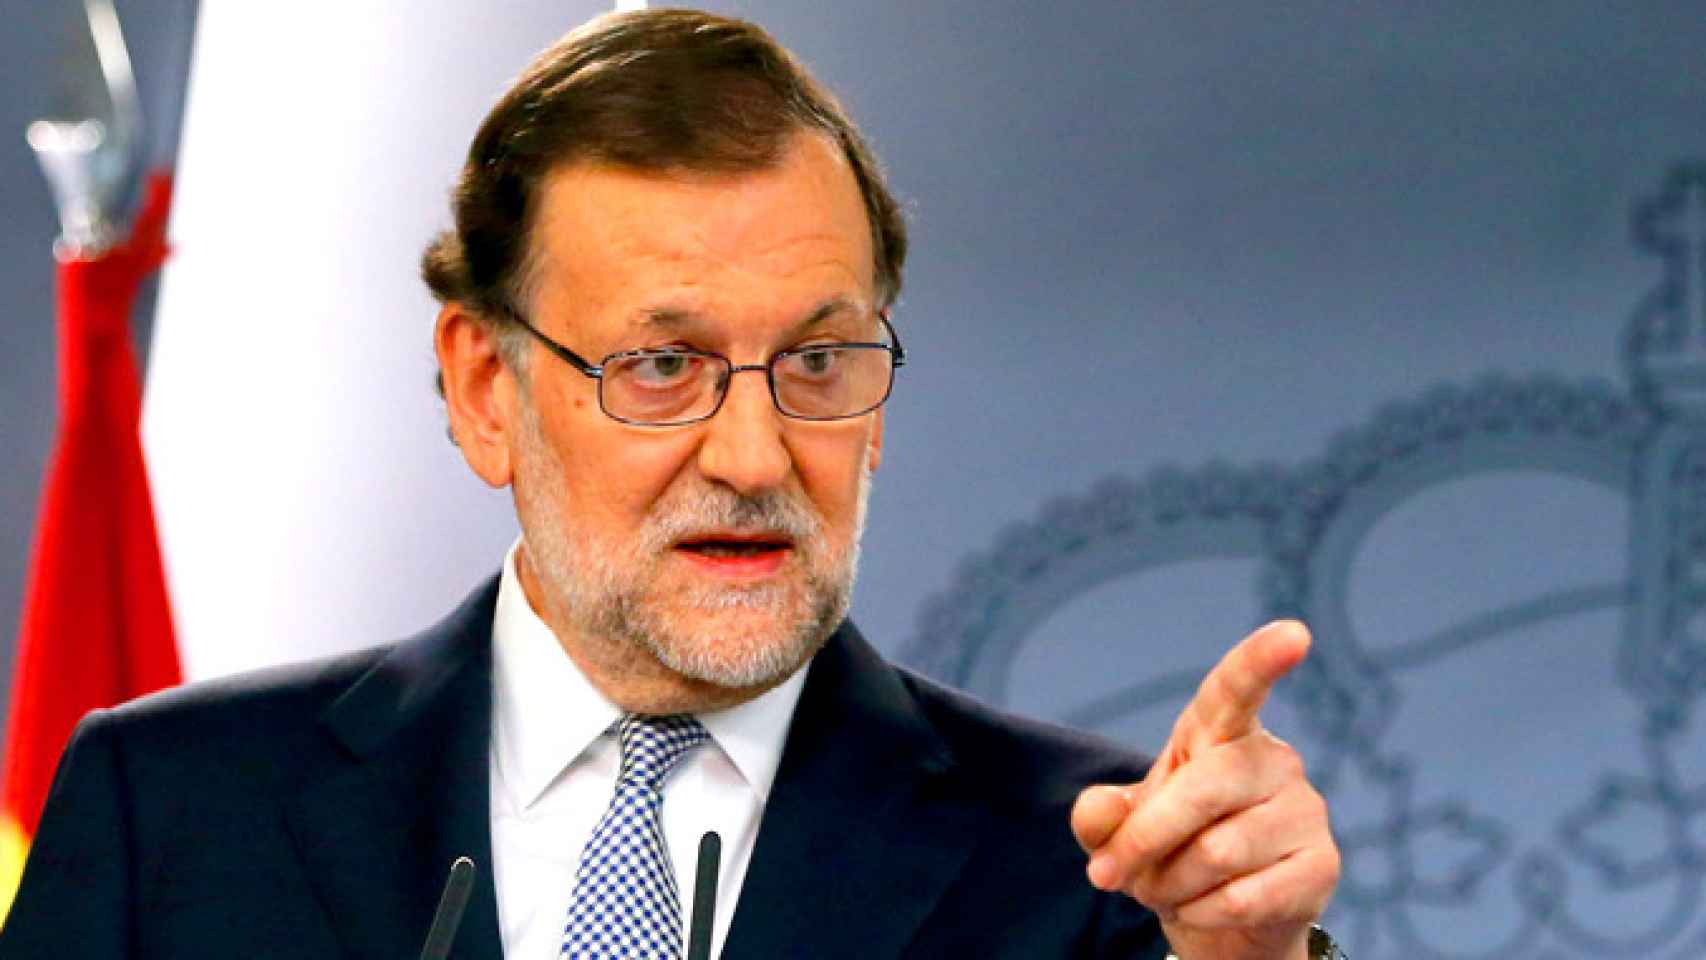 El presidente del Gobierno en funciones, Mariano Rajoy, explica su último encuentro con el Rey.